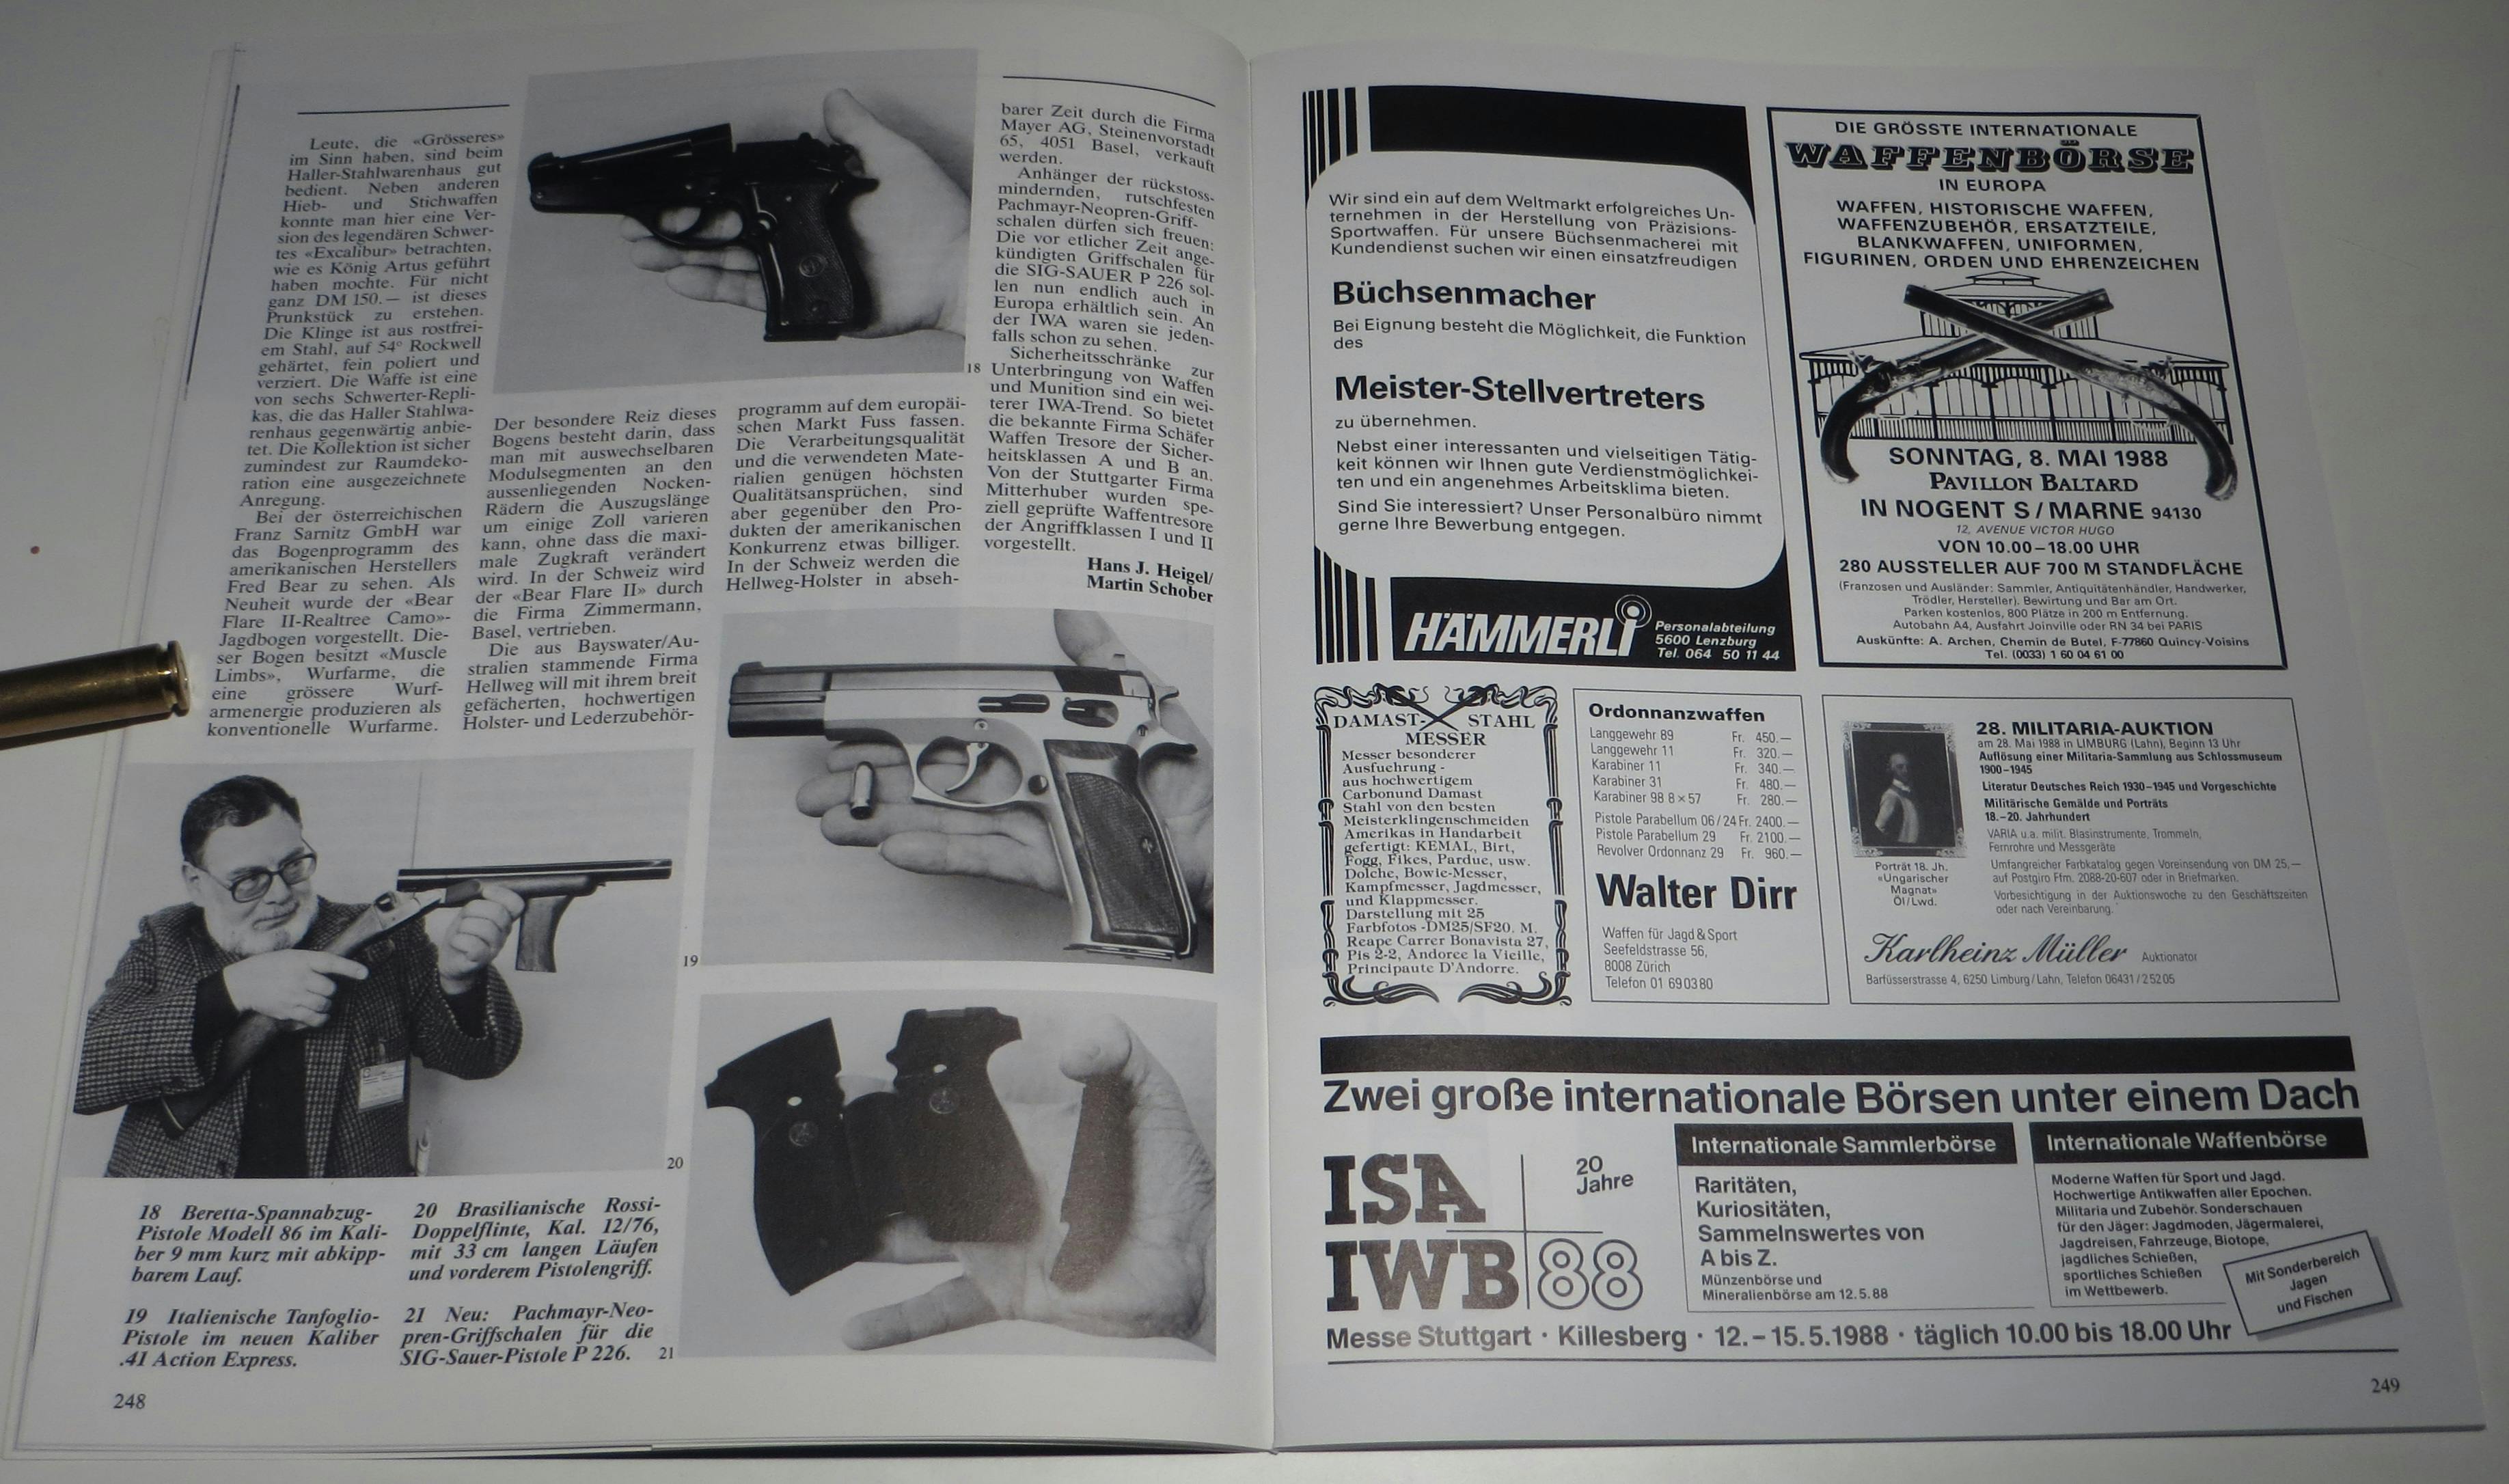 IWA 1988 von oben nach unten: Beretta Modell 86 9mm Para, Tangfoglio in 41. AE, PE Grimm beäugt kritisch den Lauf der Rossi Doppelflinte in 12/76 und Pachmayer Neoprengriffe für die P226. Inseratemässig suchte Hämmerli einen Büchser und Walter Dirr hatte damals schon exorbitante Preise für Parabellum-Pistolen
